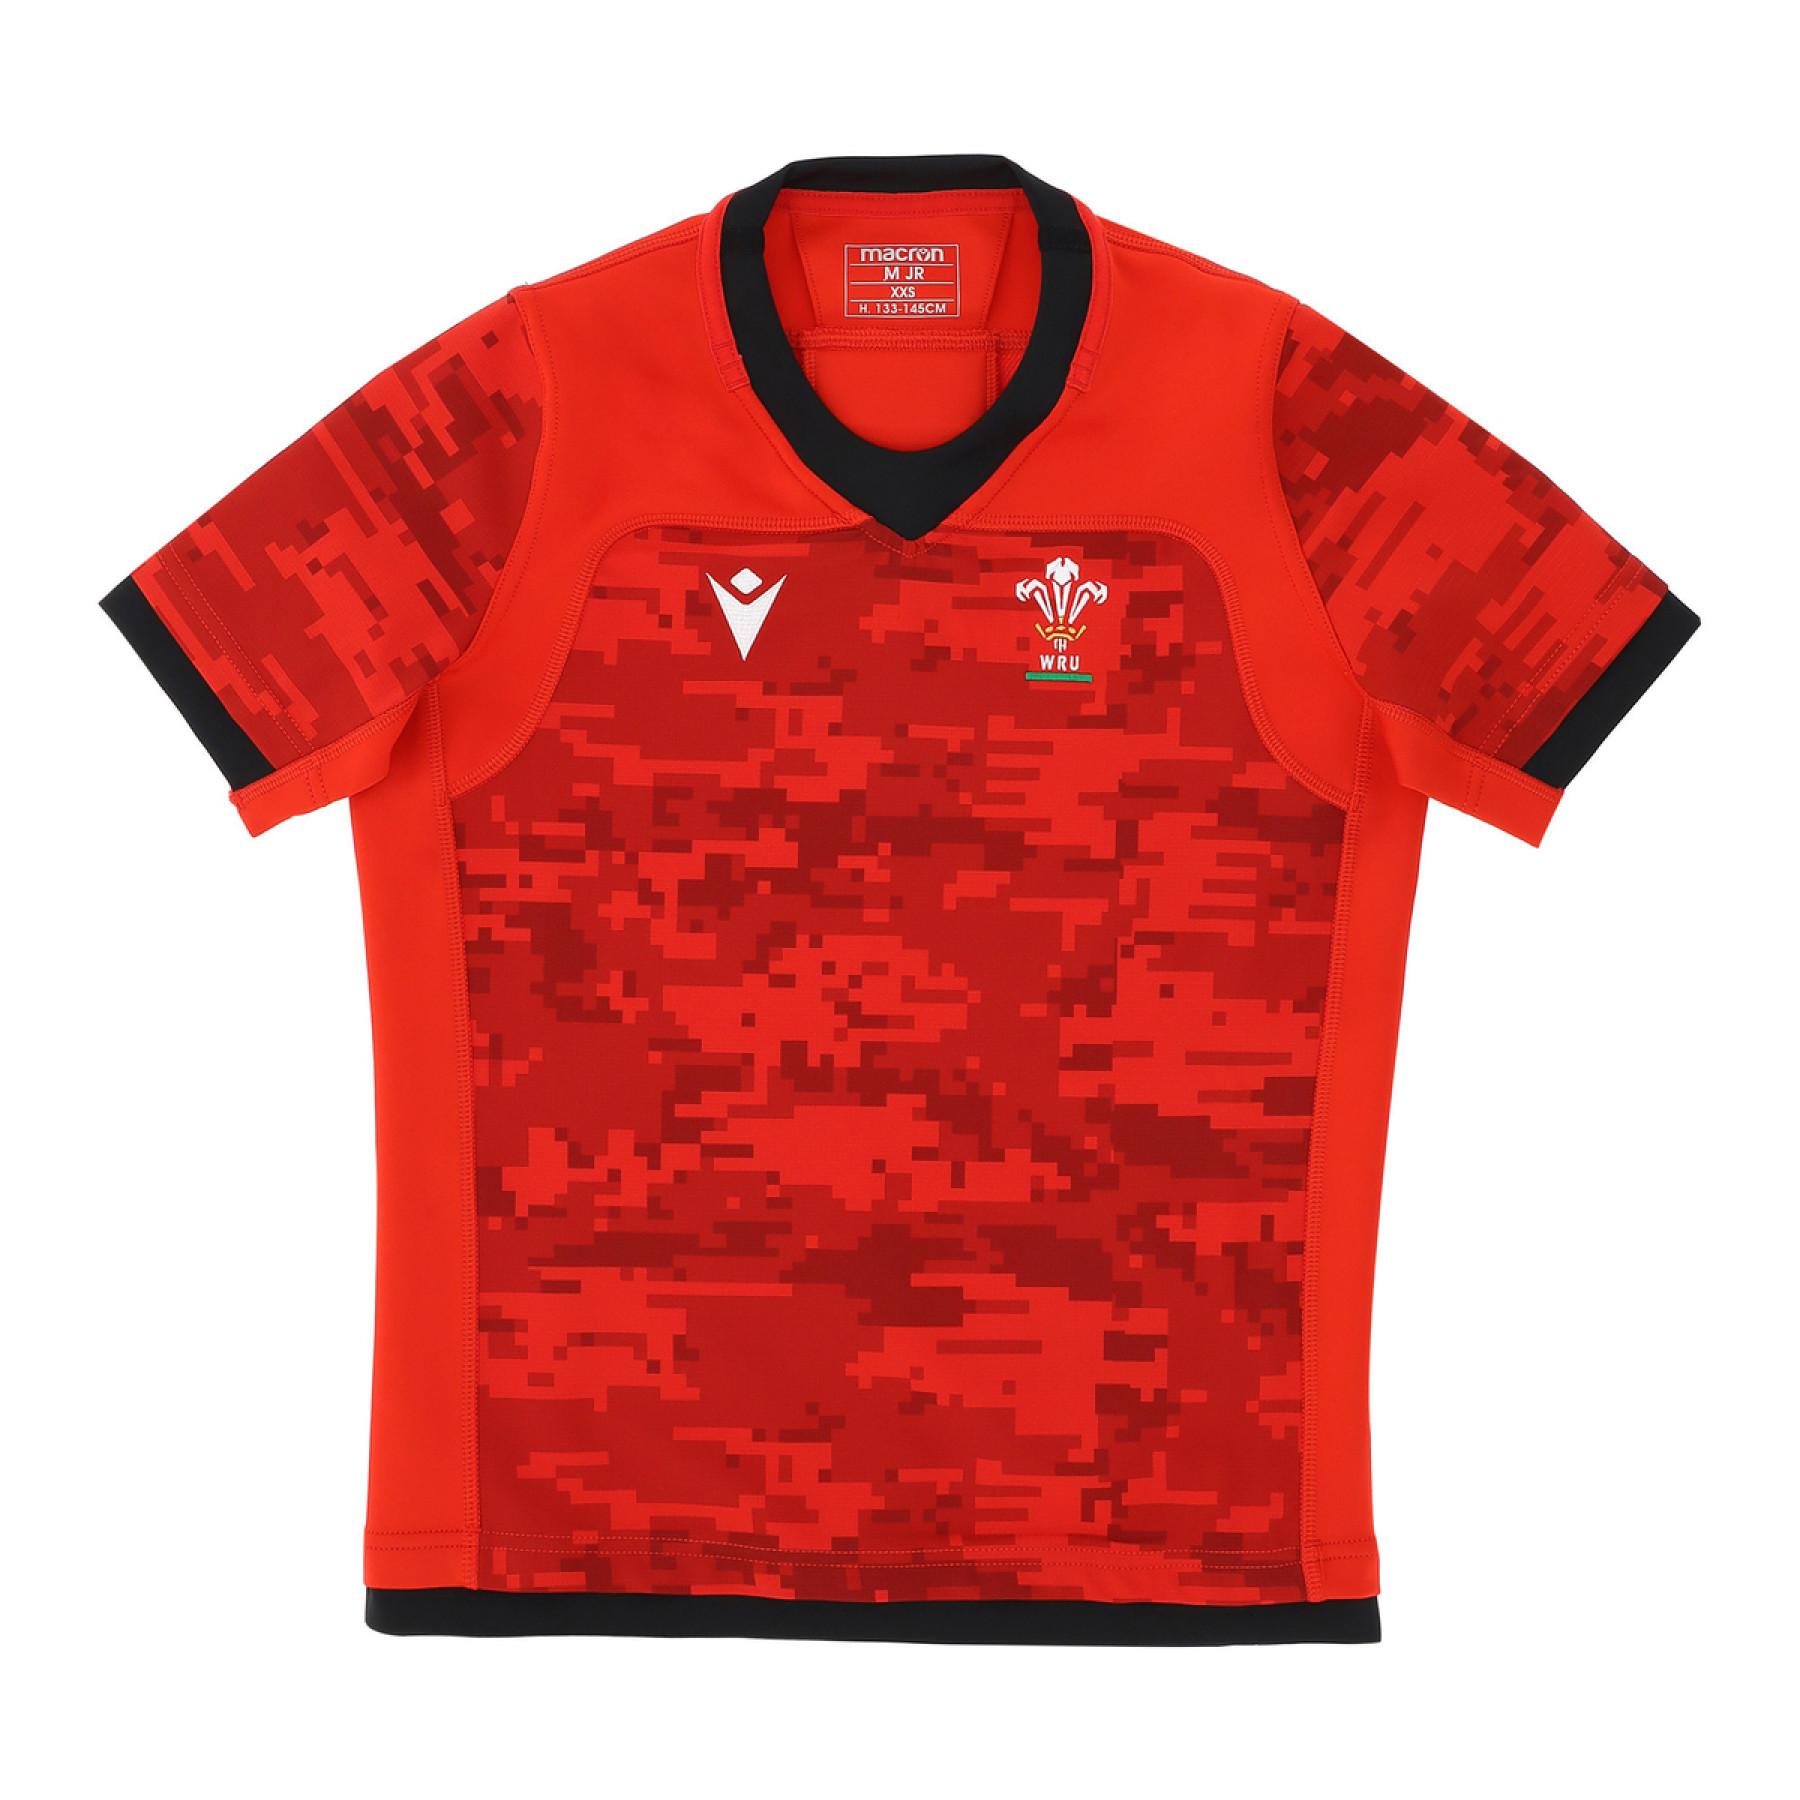 Kinder rugby T-shirt Pays de Galles union 2020/21